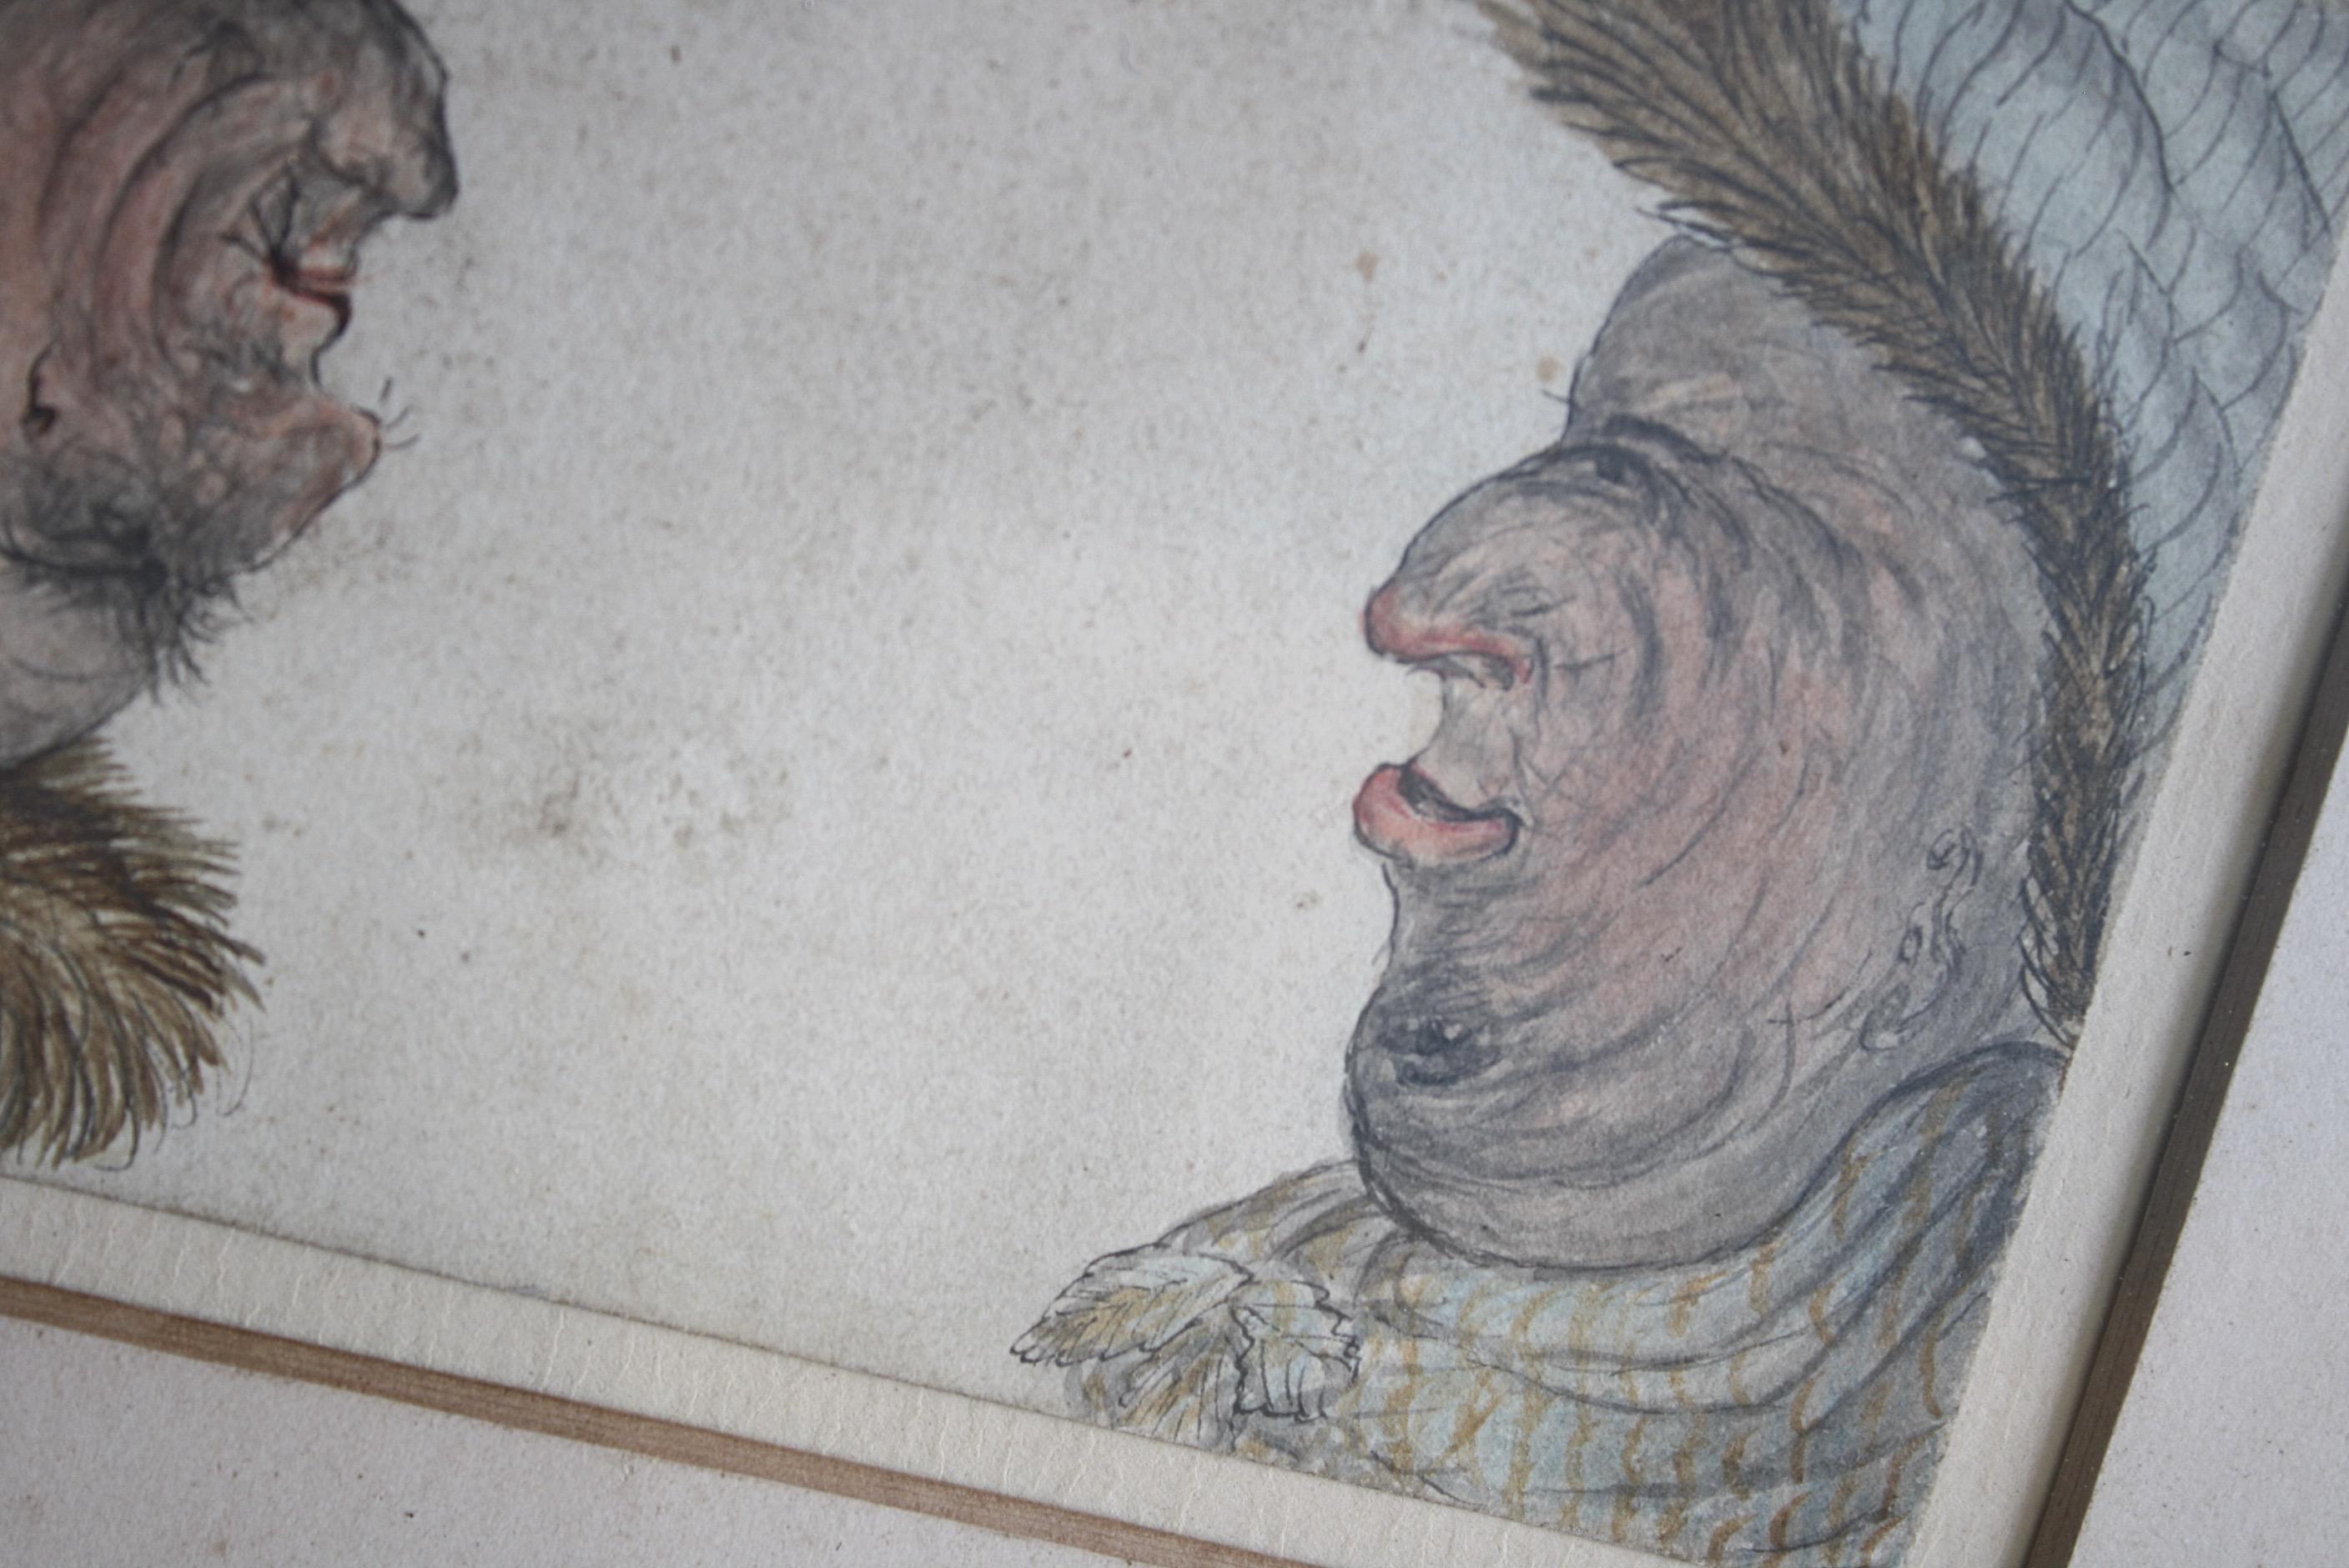 Une photo de profil réversible grotesque et inhabituelle de deux messieurs bien conservés.

Aquarelle et encre sur papier, dans un cadre à anches de style Regency. 

Circa 1860, d'origine anglaise 

27.5/23/1.2cm.